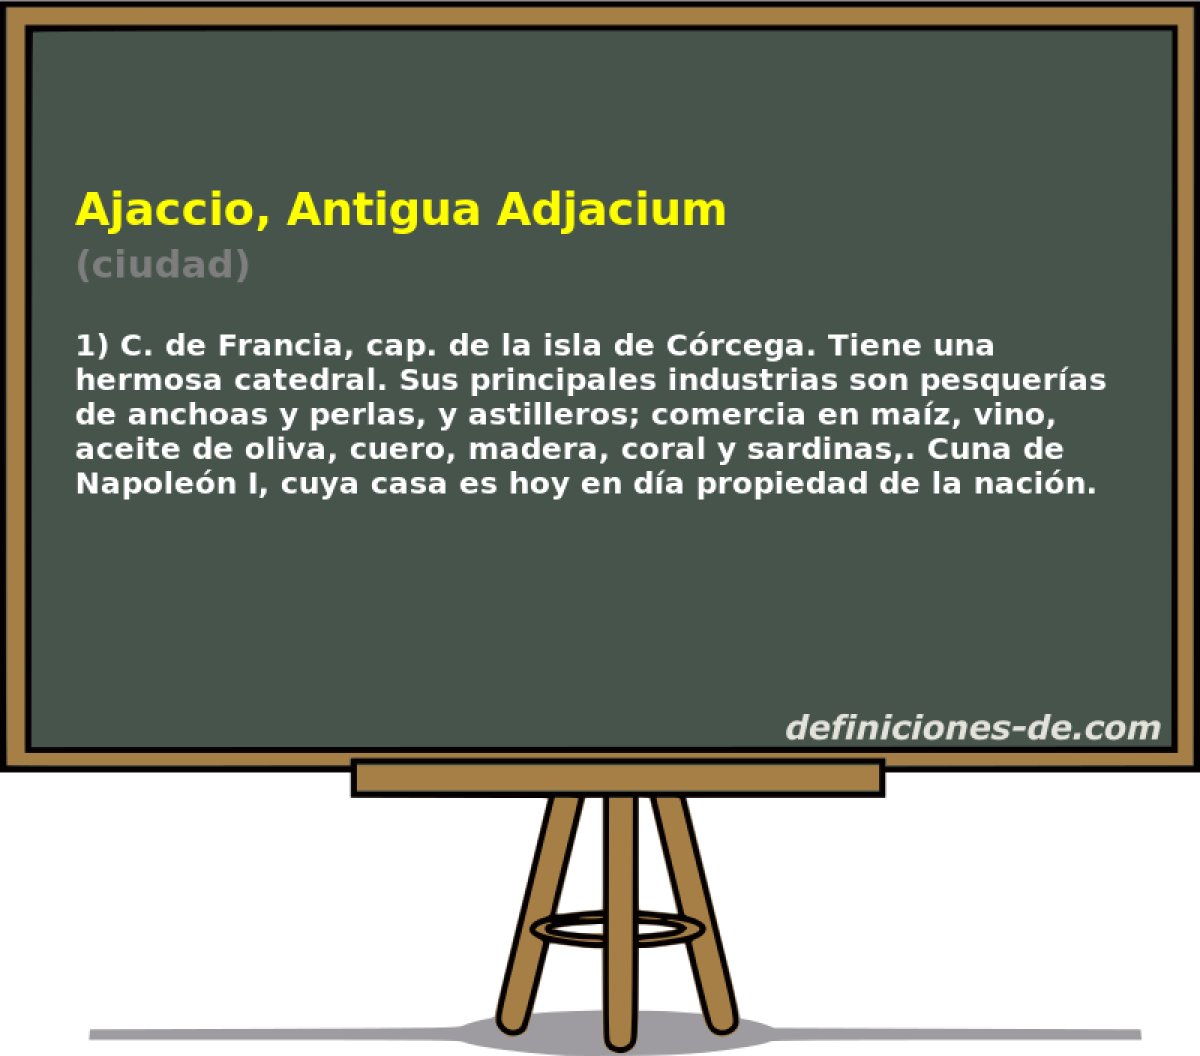 Ajaccio, Antigua Adjacium (ciudad)